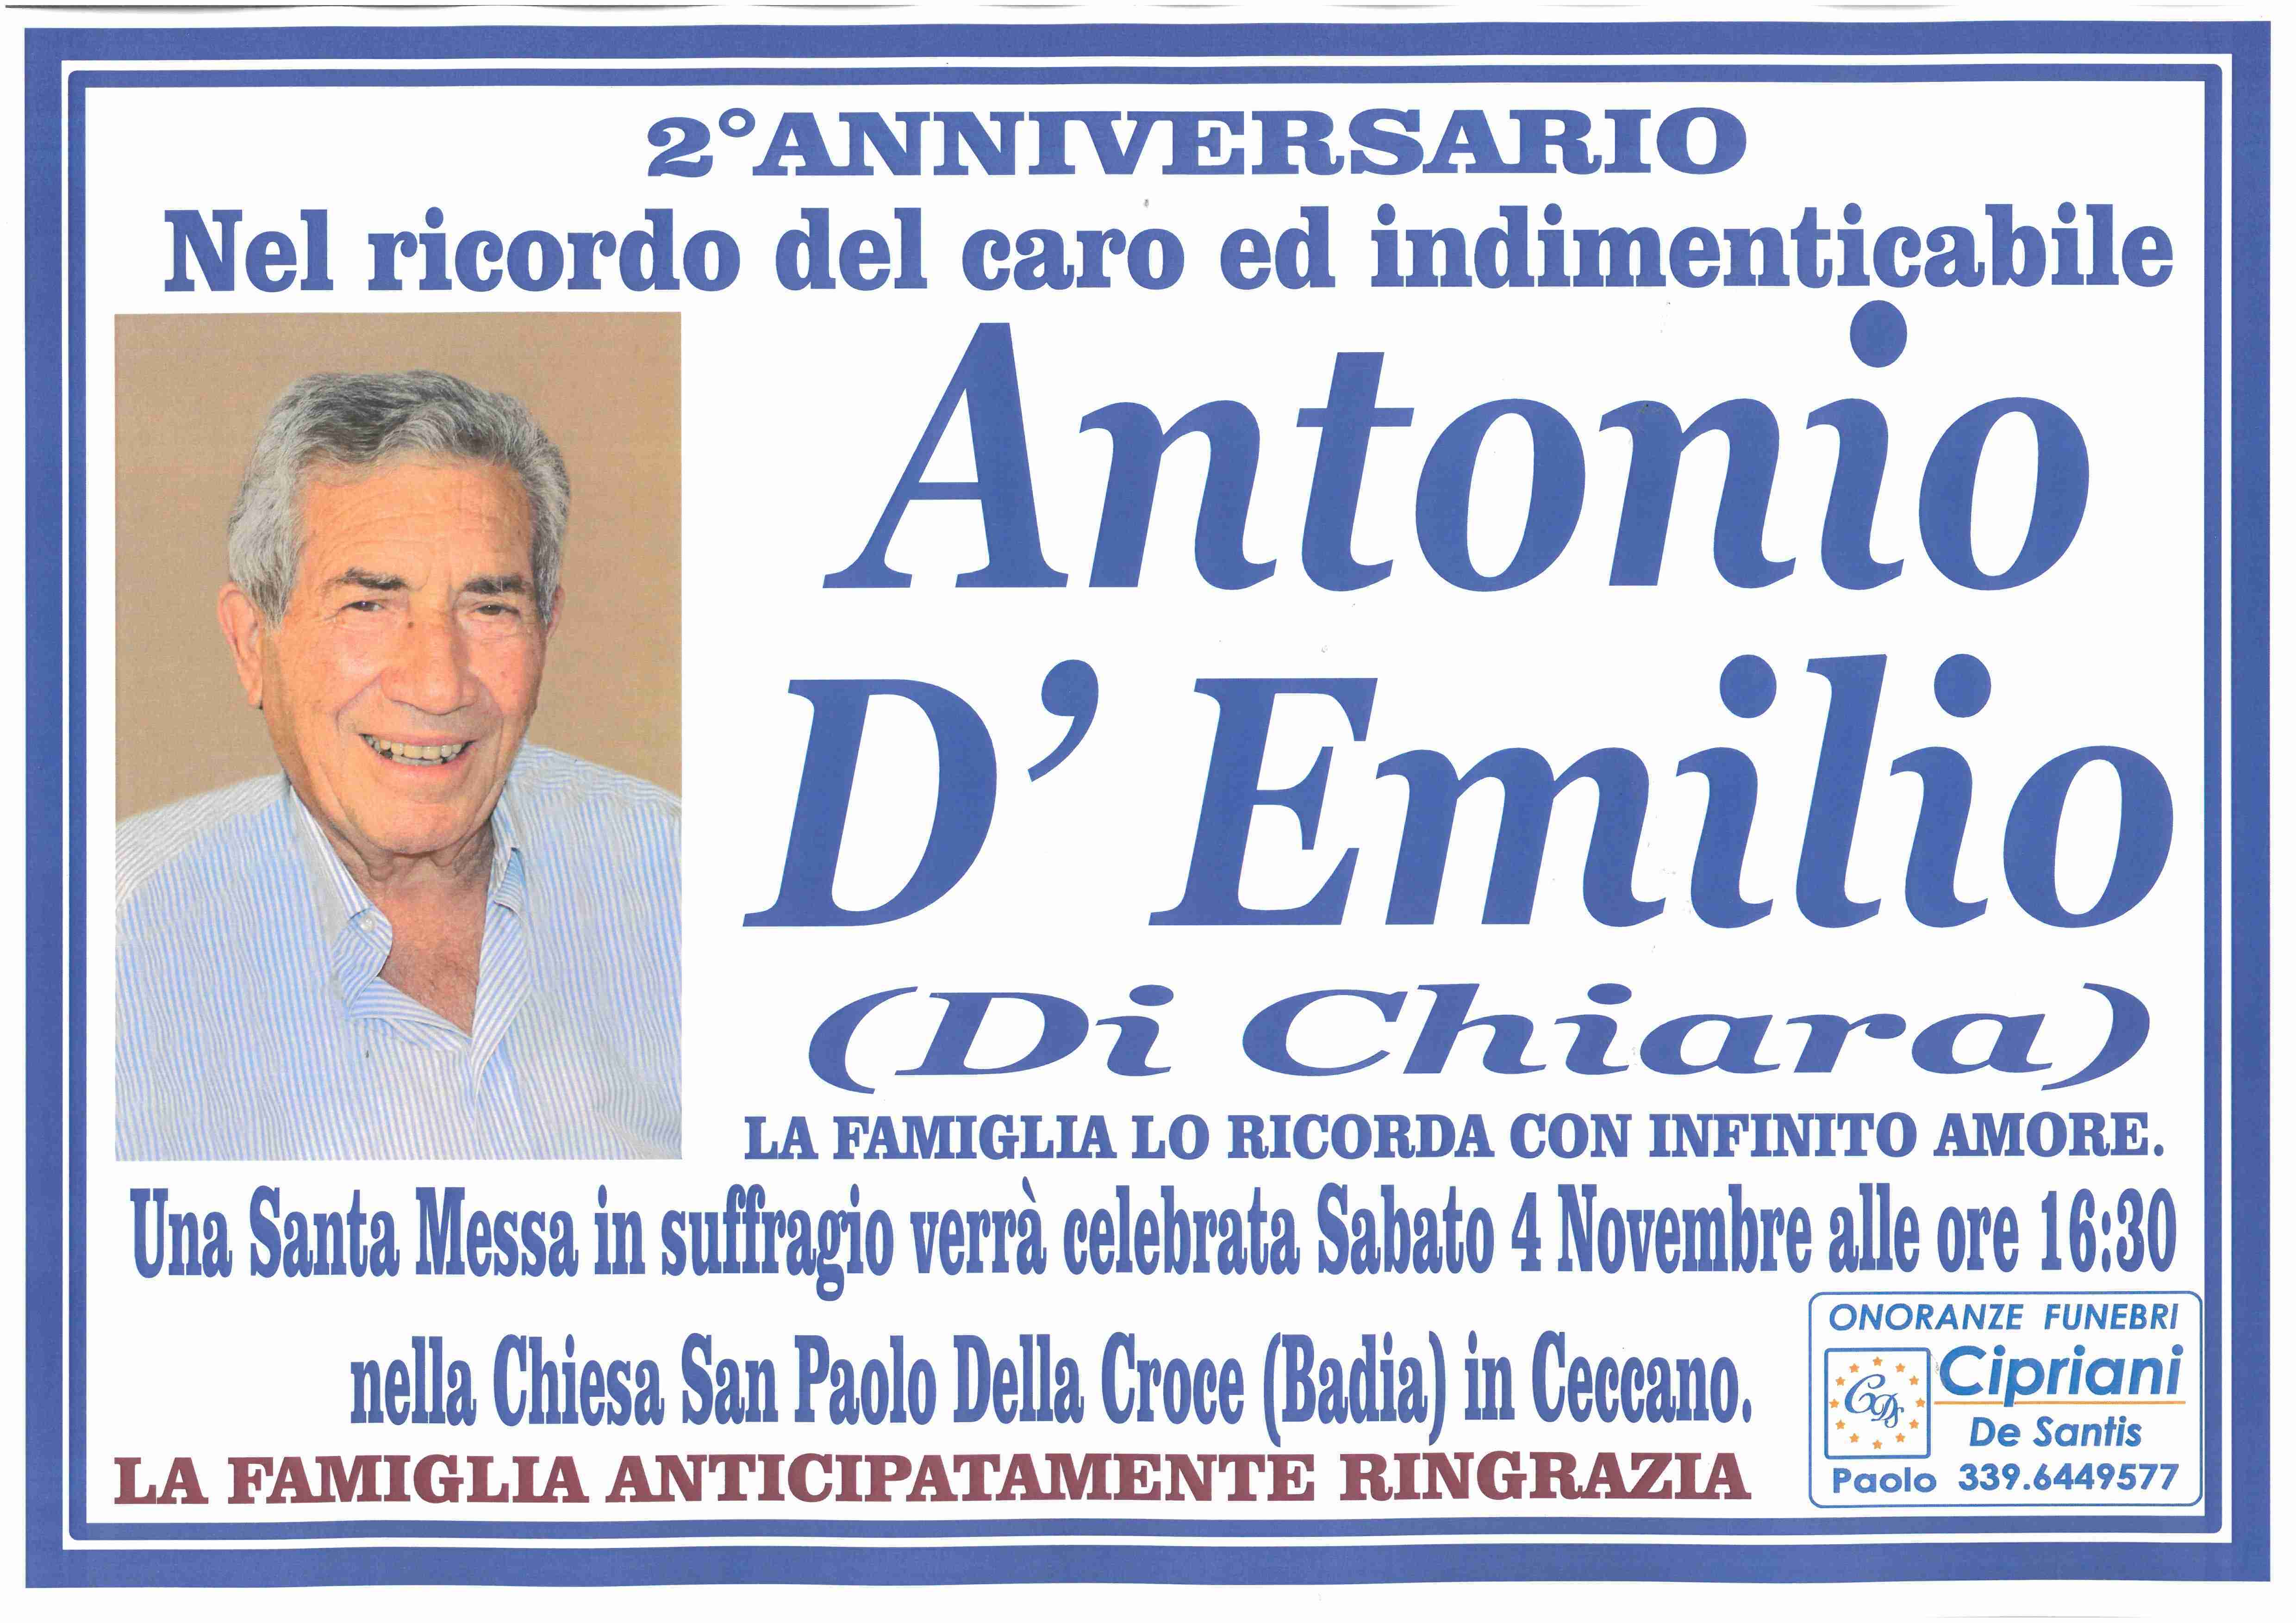 Antonio D'Emilio